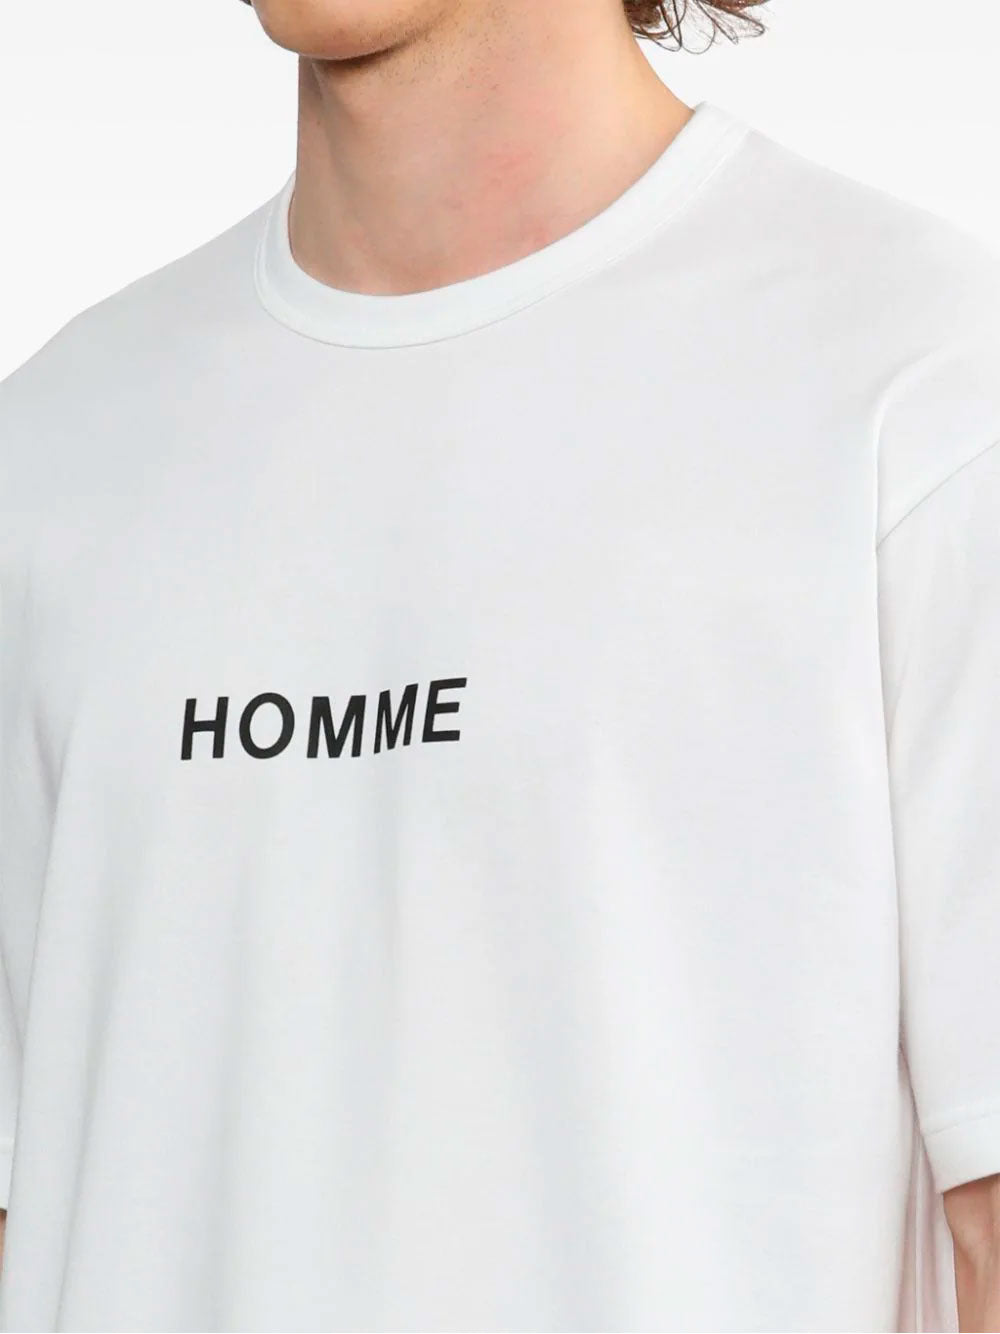 Homme-print cotton t-shirt